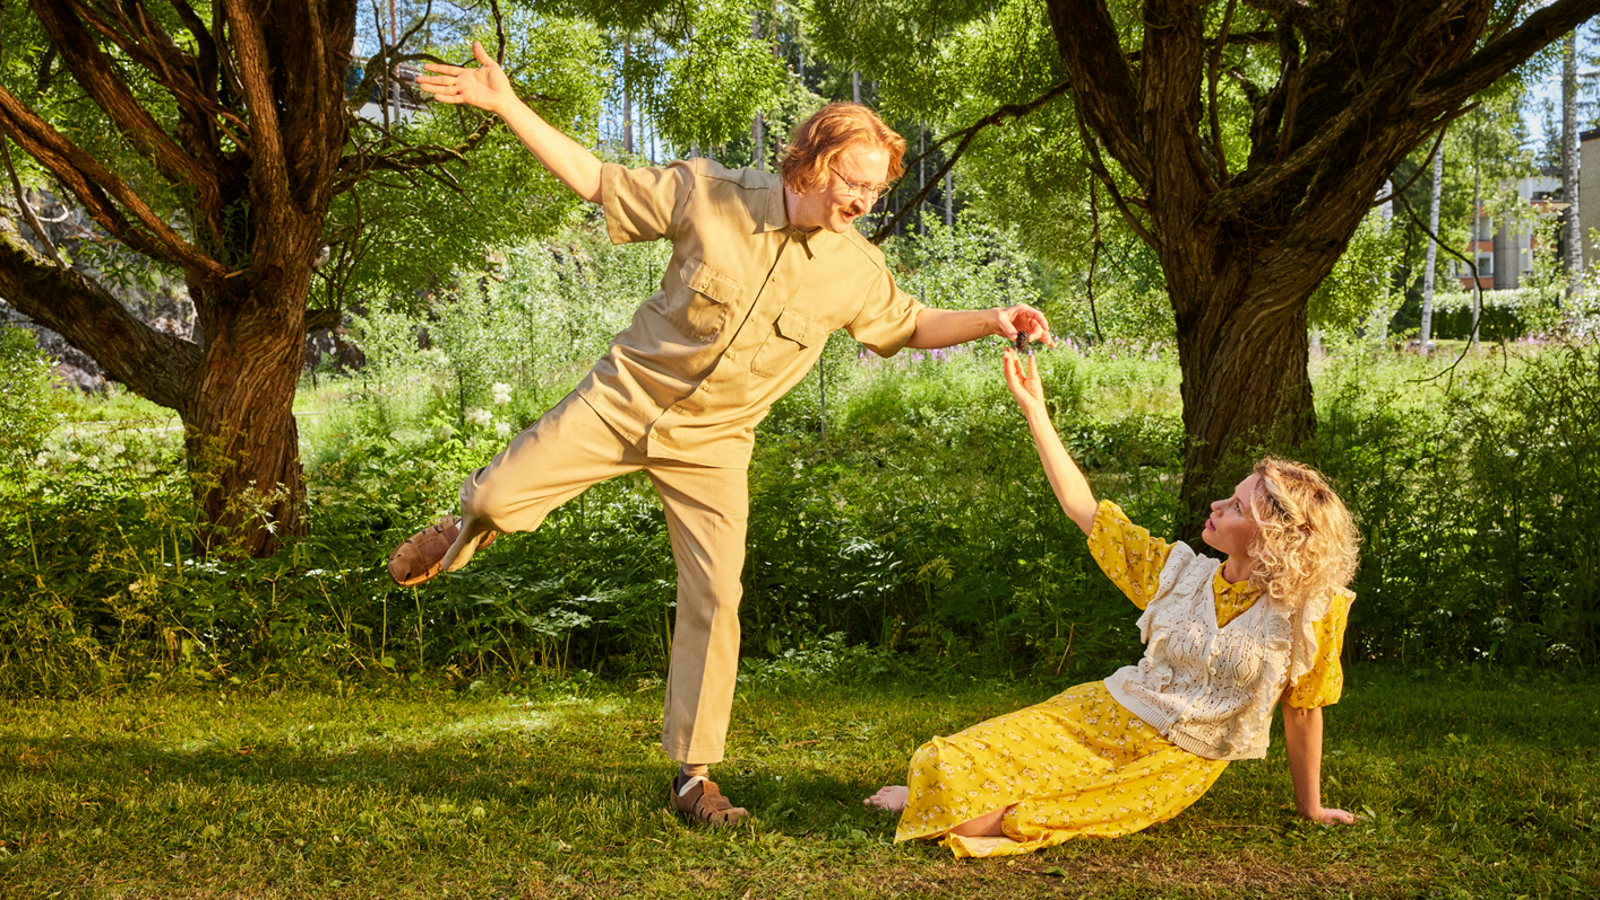 Kuvassa ovat Ylermi Rajamaa tanssimassa keltaisessa puvussa ja Minka Kuustonen istumassa nurmikolla.  Hänellä on myös keltainen puku. Taustalla on kahden puun rungot ja kohtaus on puistossa.